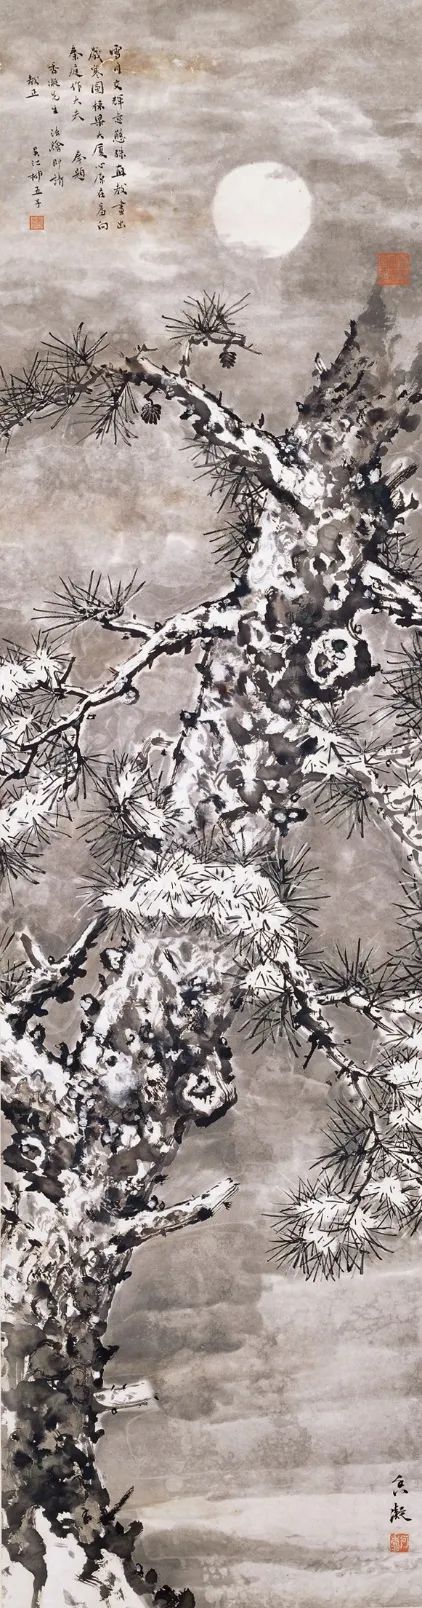 雪·月·松 何香凝 1920年代 147×39cm 水墨纸本 何香凝美术馆